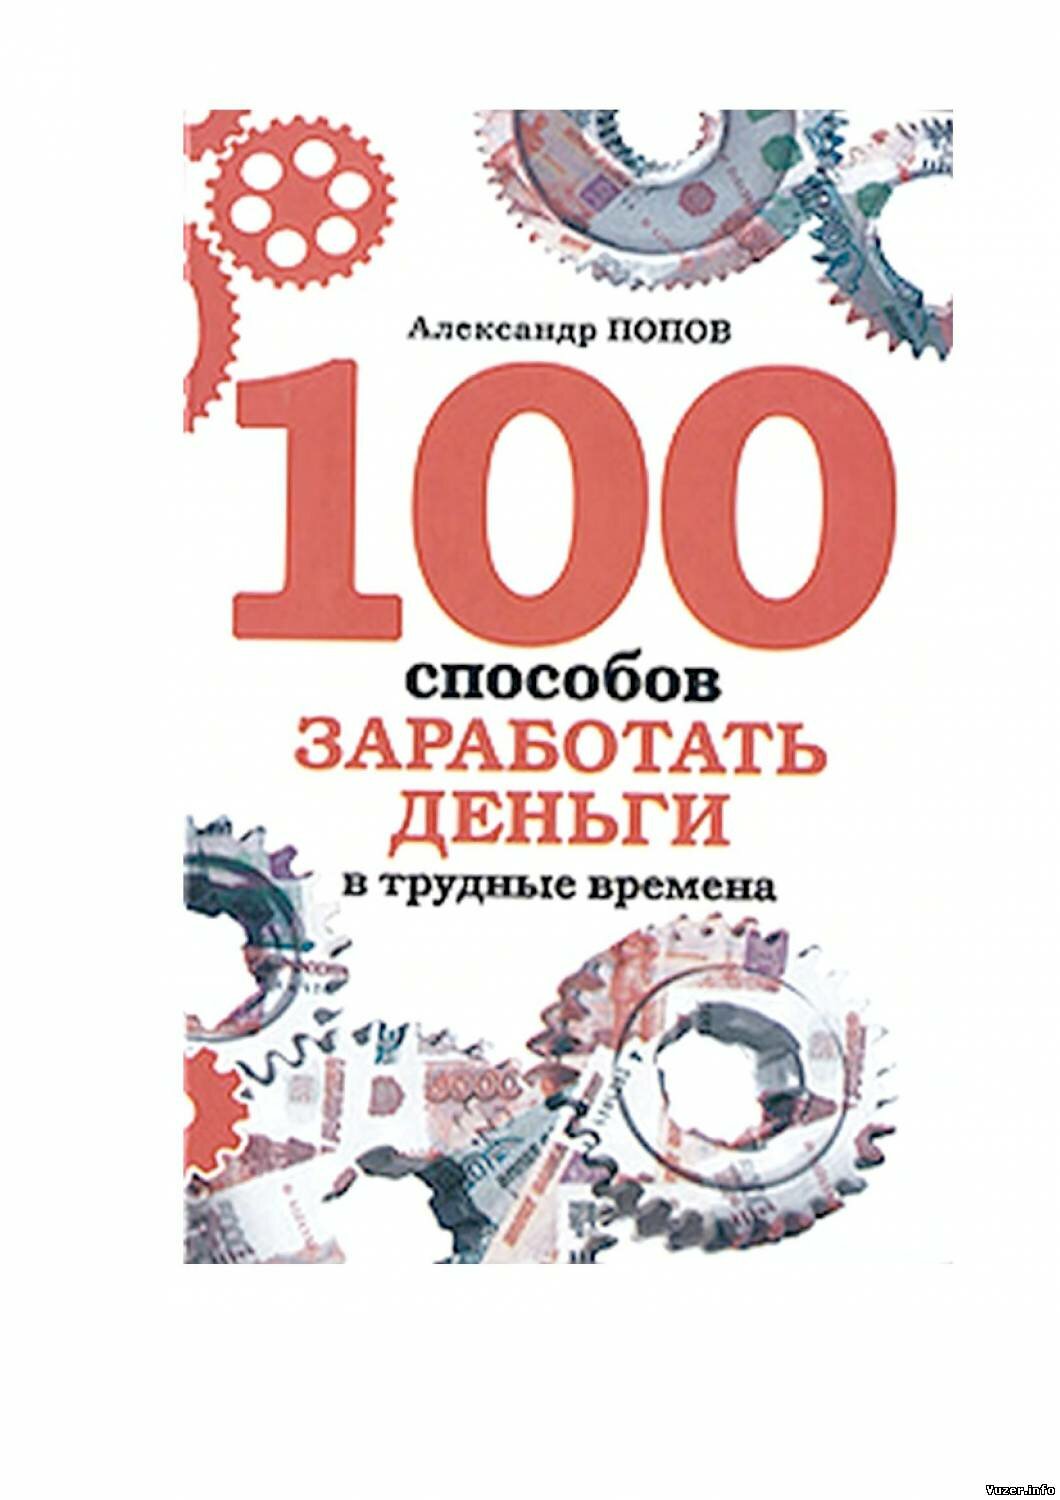 Александр Попов, 100 способов заработать деньги в трудные времена.